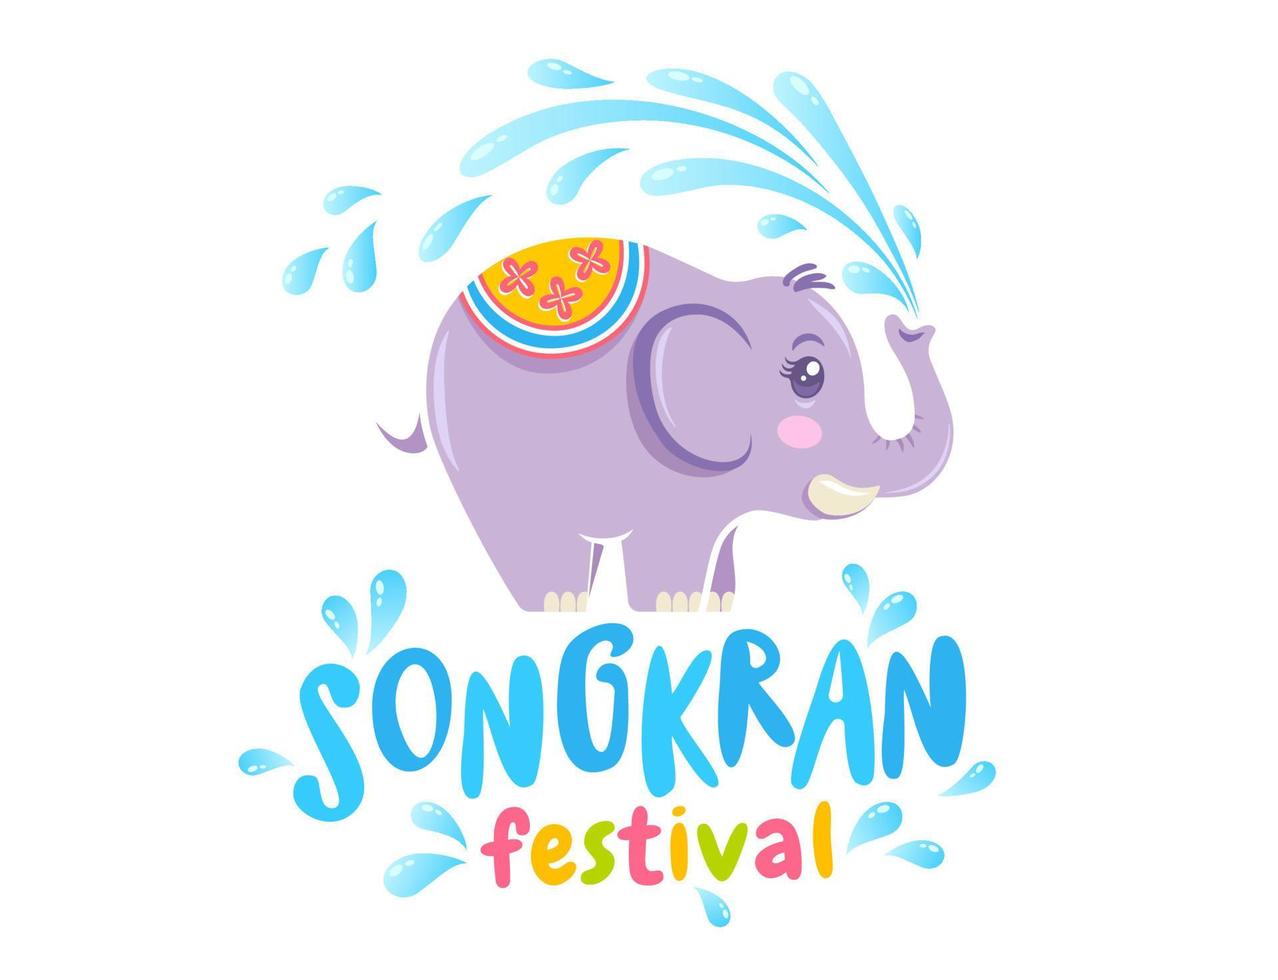 vector logo voor songkran festival in thailand met olifant op geïsoleerde achtergrond. embleem voor songkran waterfestival.